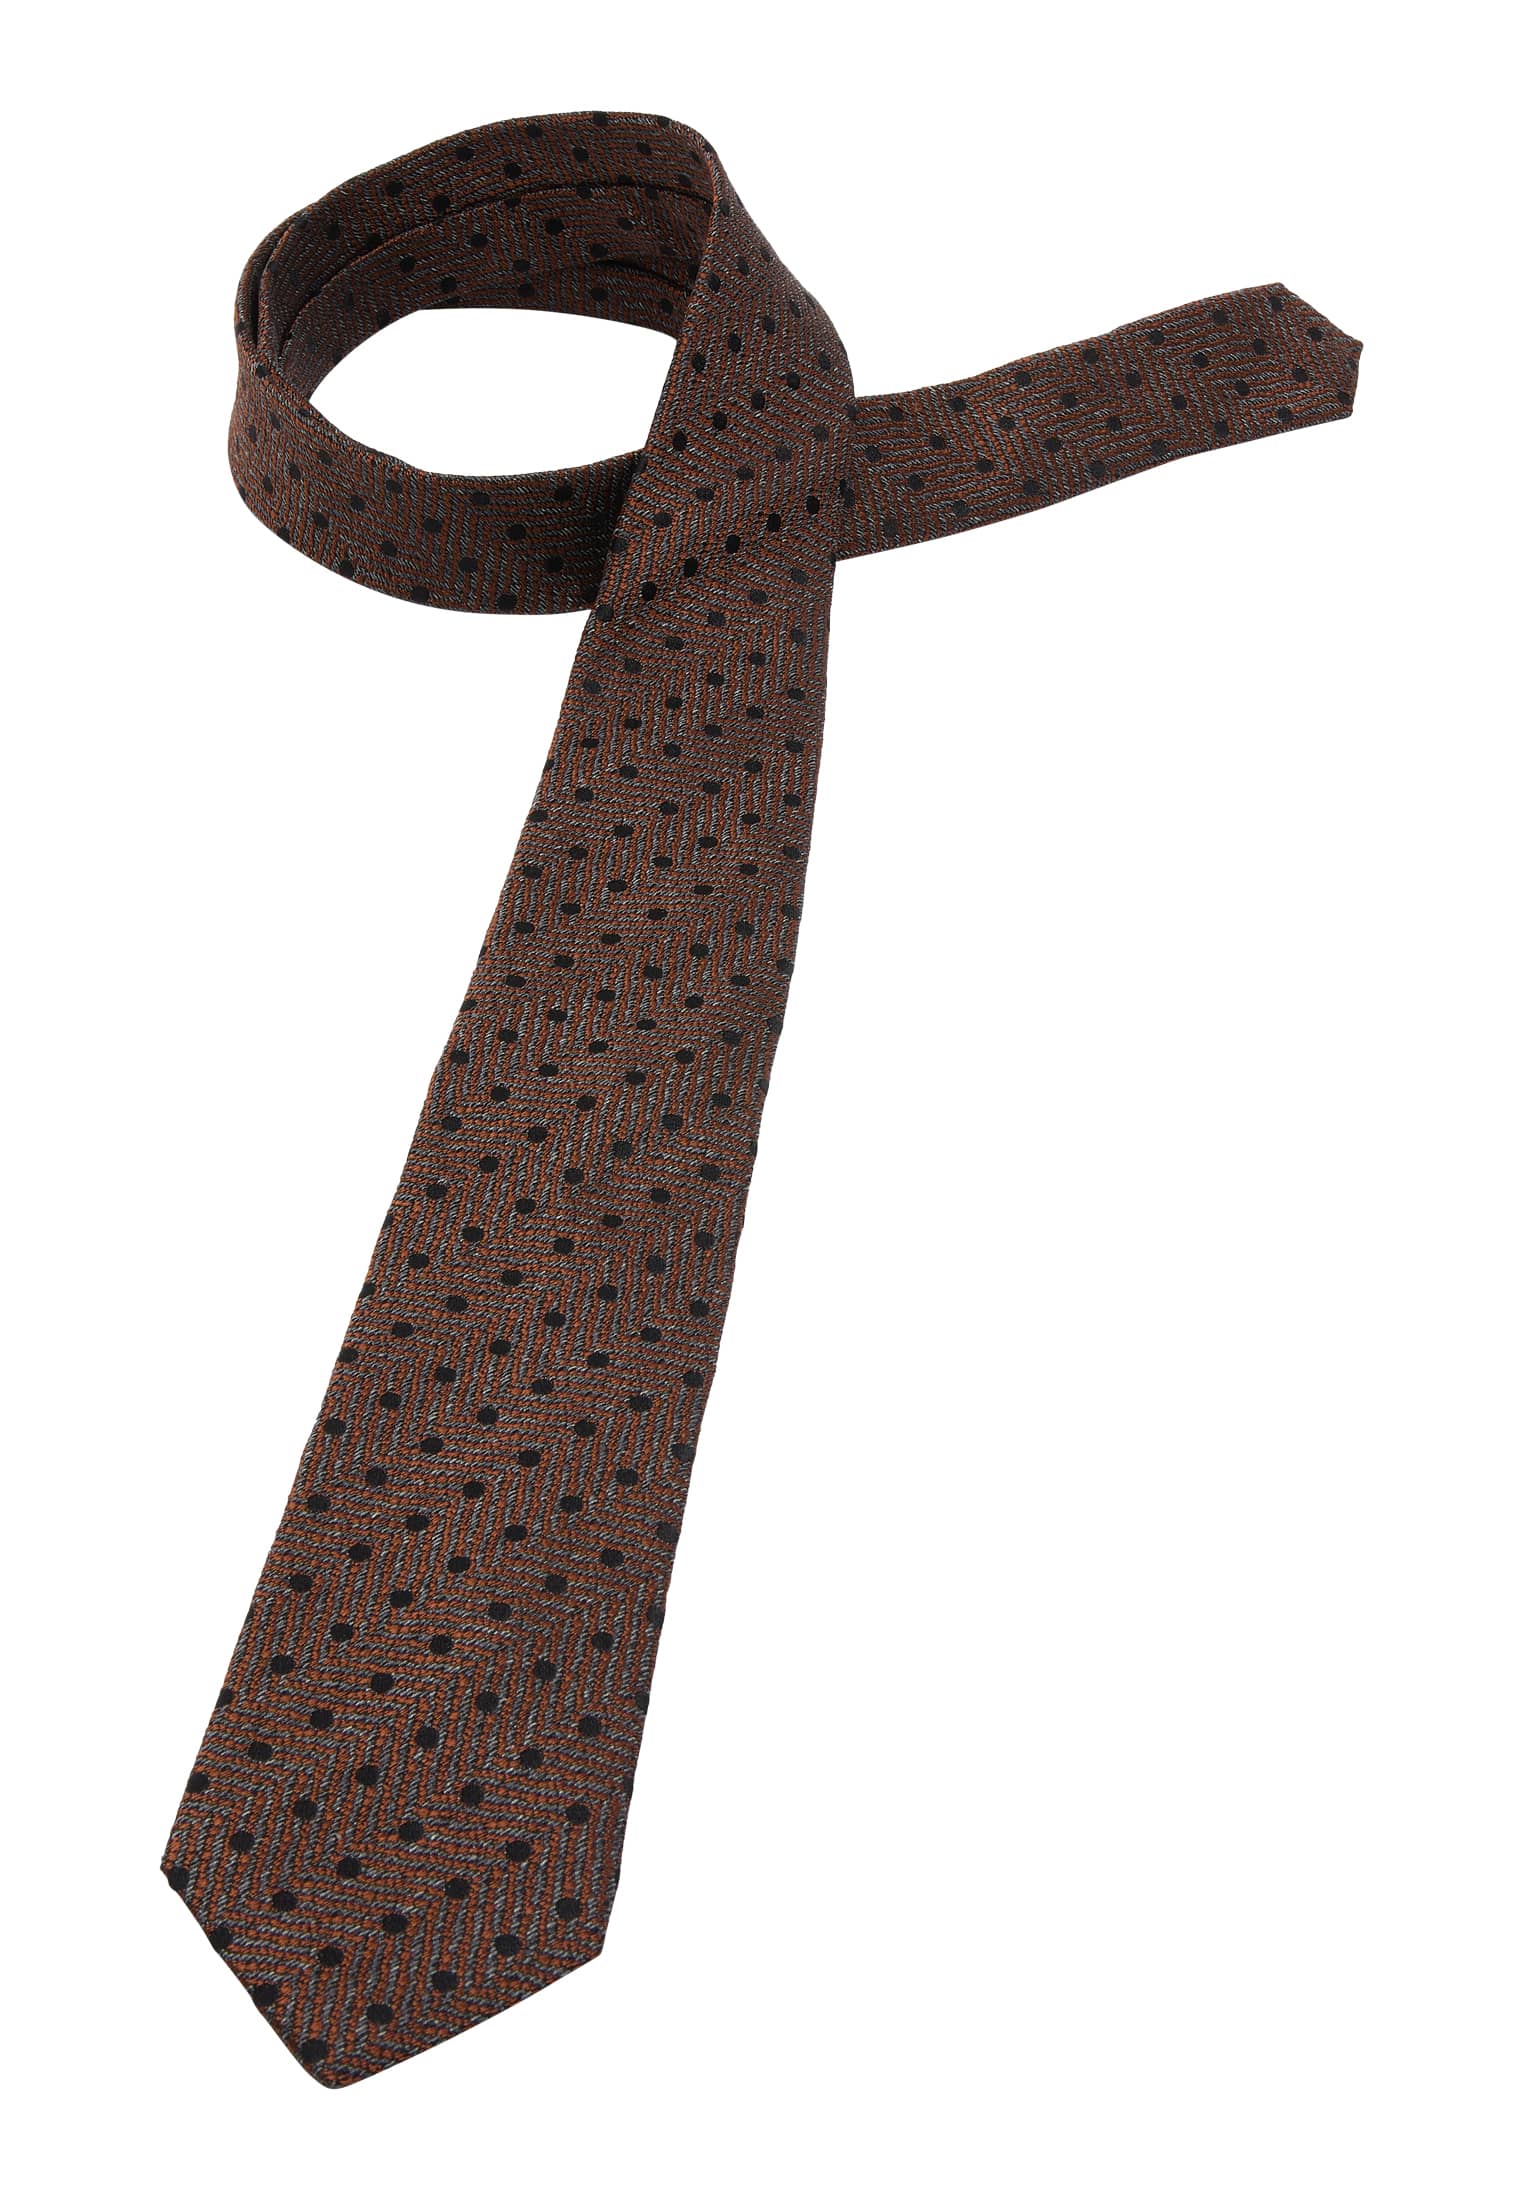 Krawatte in braun strukturiert 1AC01933-02-91-142 | | 142 | braun